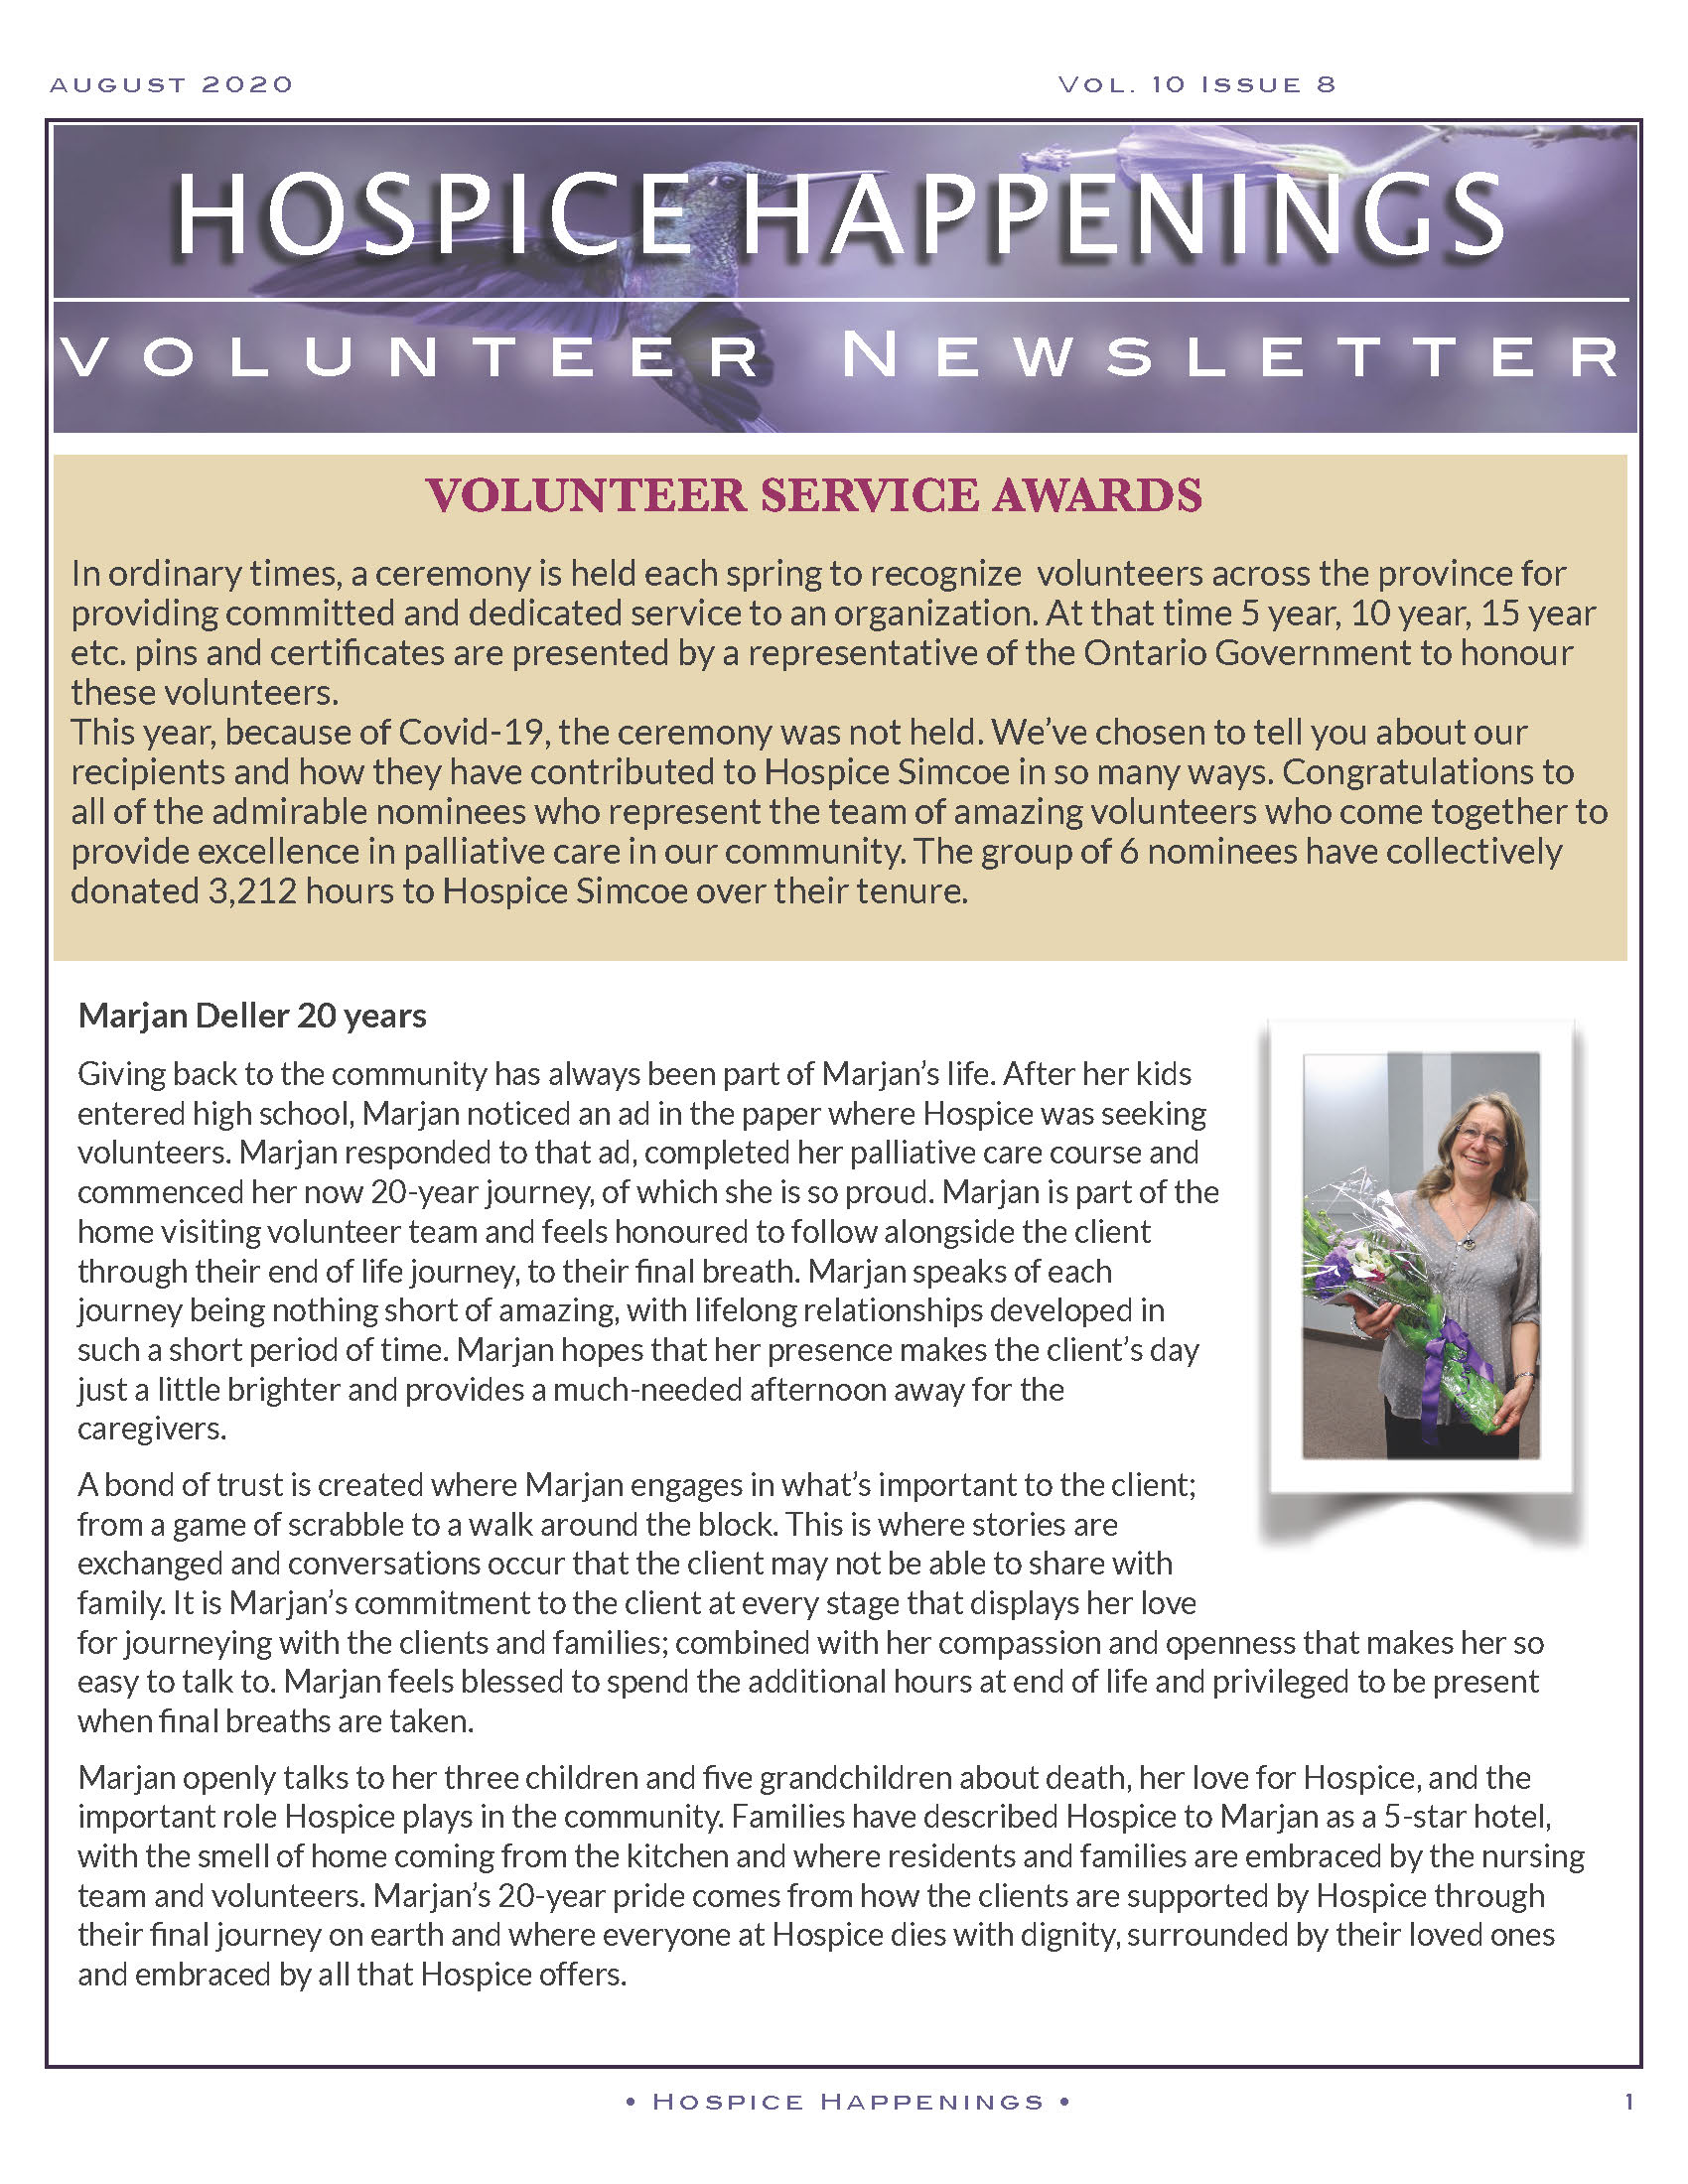 Volunteer Newsletter